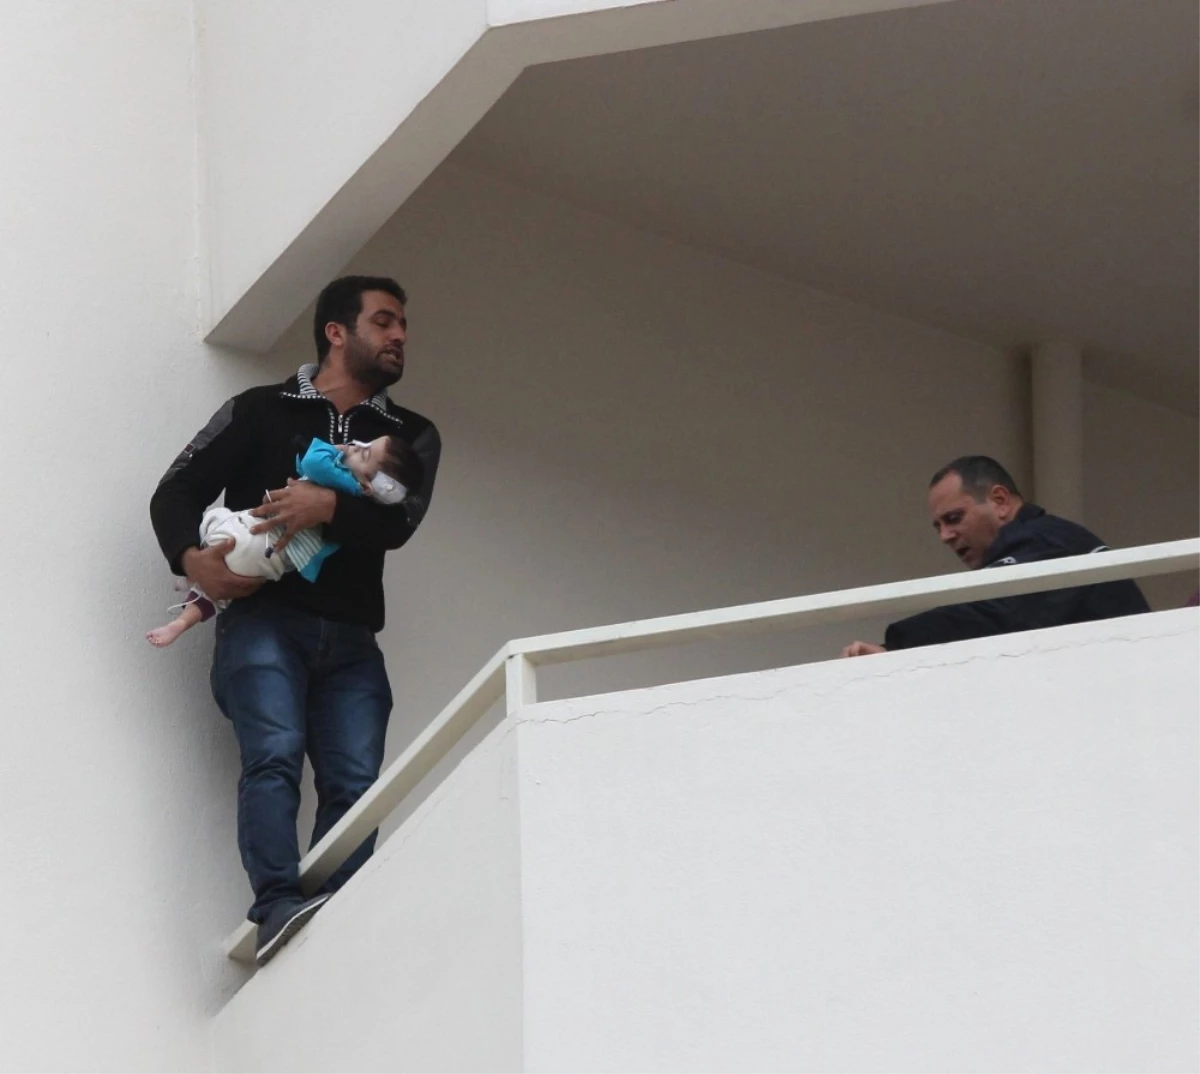 İntihara Kalkışan Babanın Kucağındaki Bebeğe Adana Valisi Sahip Çıktı